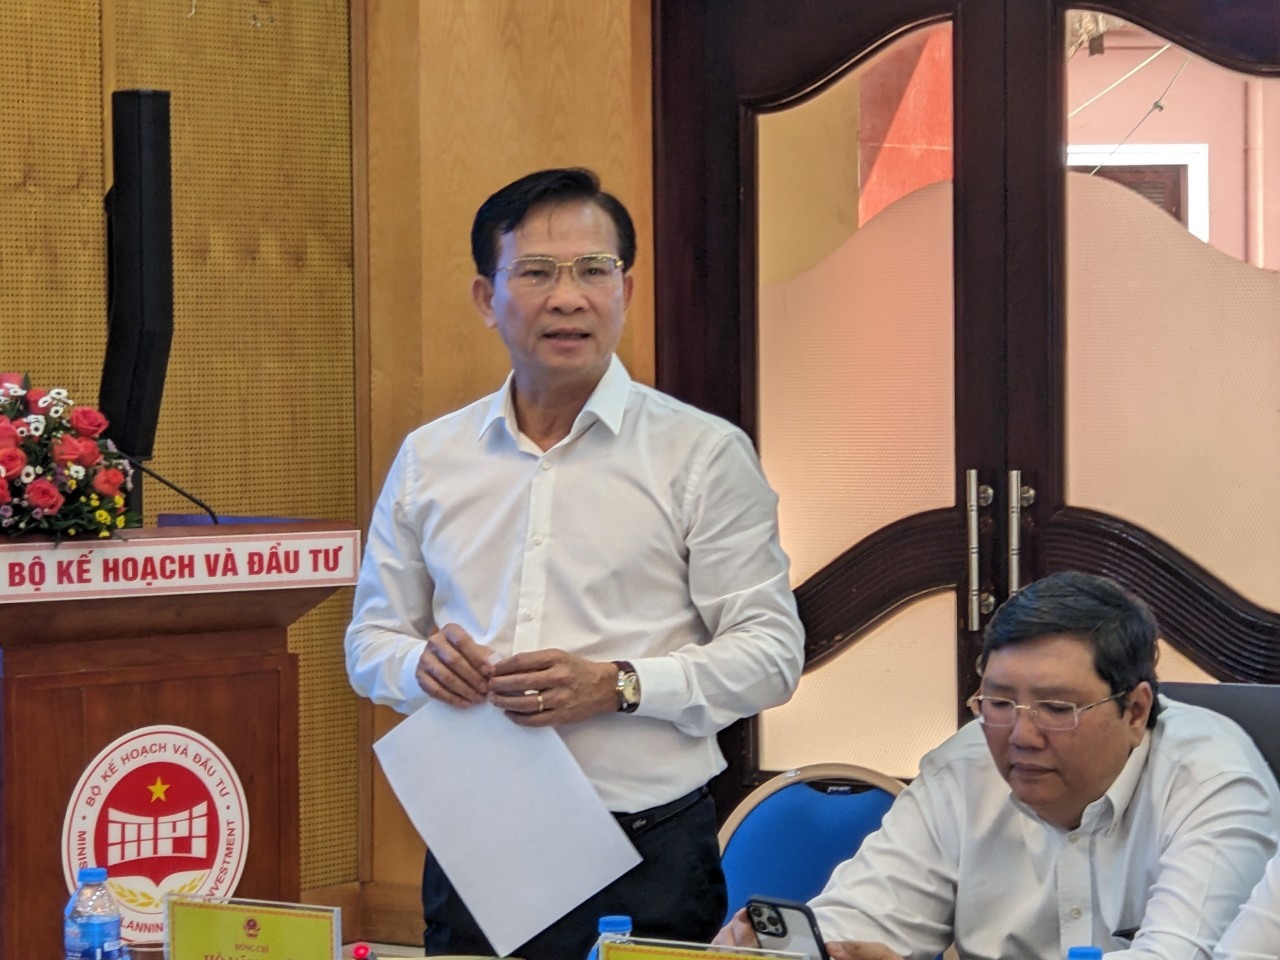 Ông Hồ Văn Mười-Chủ tịch UBND tỉnh Đắk Nông nhấn mạnh về tầm quan trọng của quy hoạch tỉnh. Ảnh: Hoài Anh